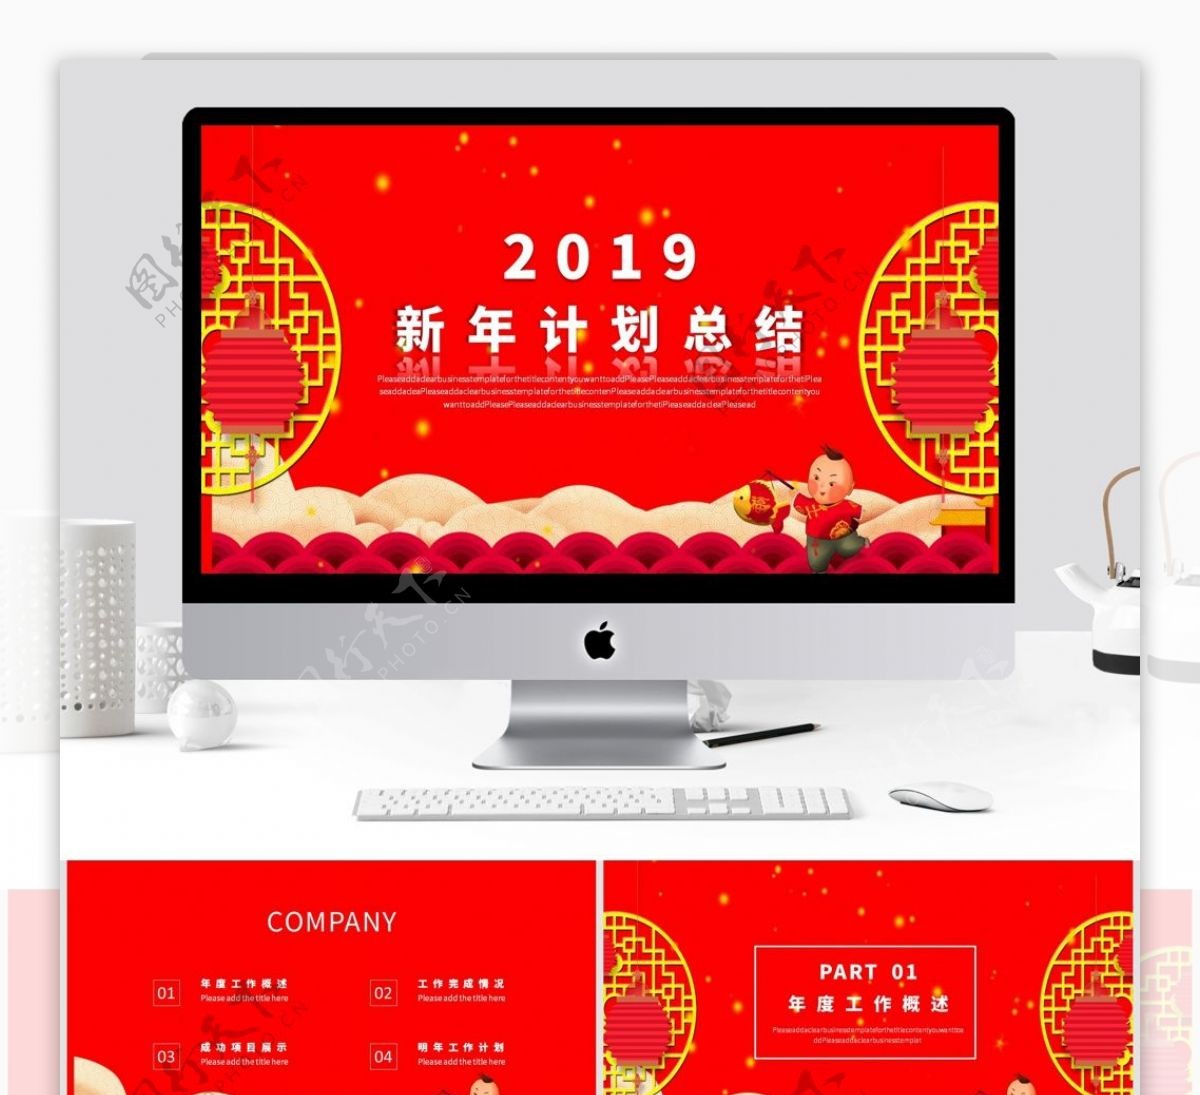 2019红色新年计划总结模板